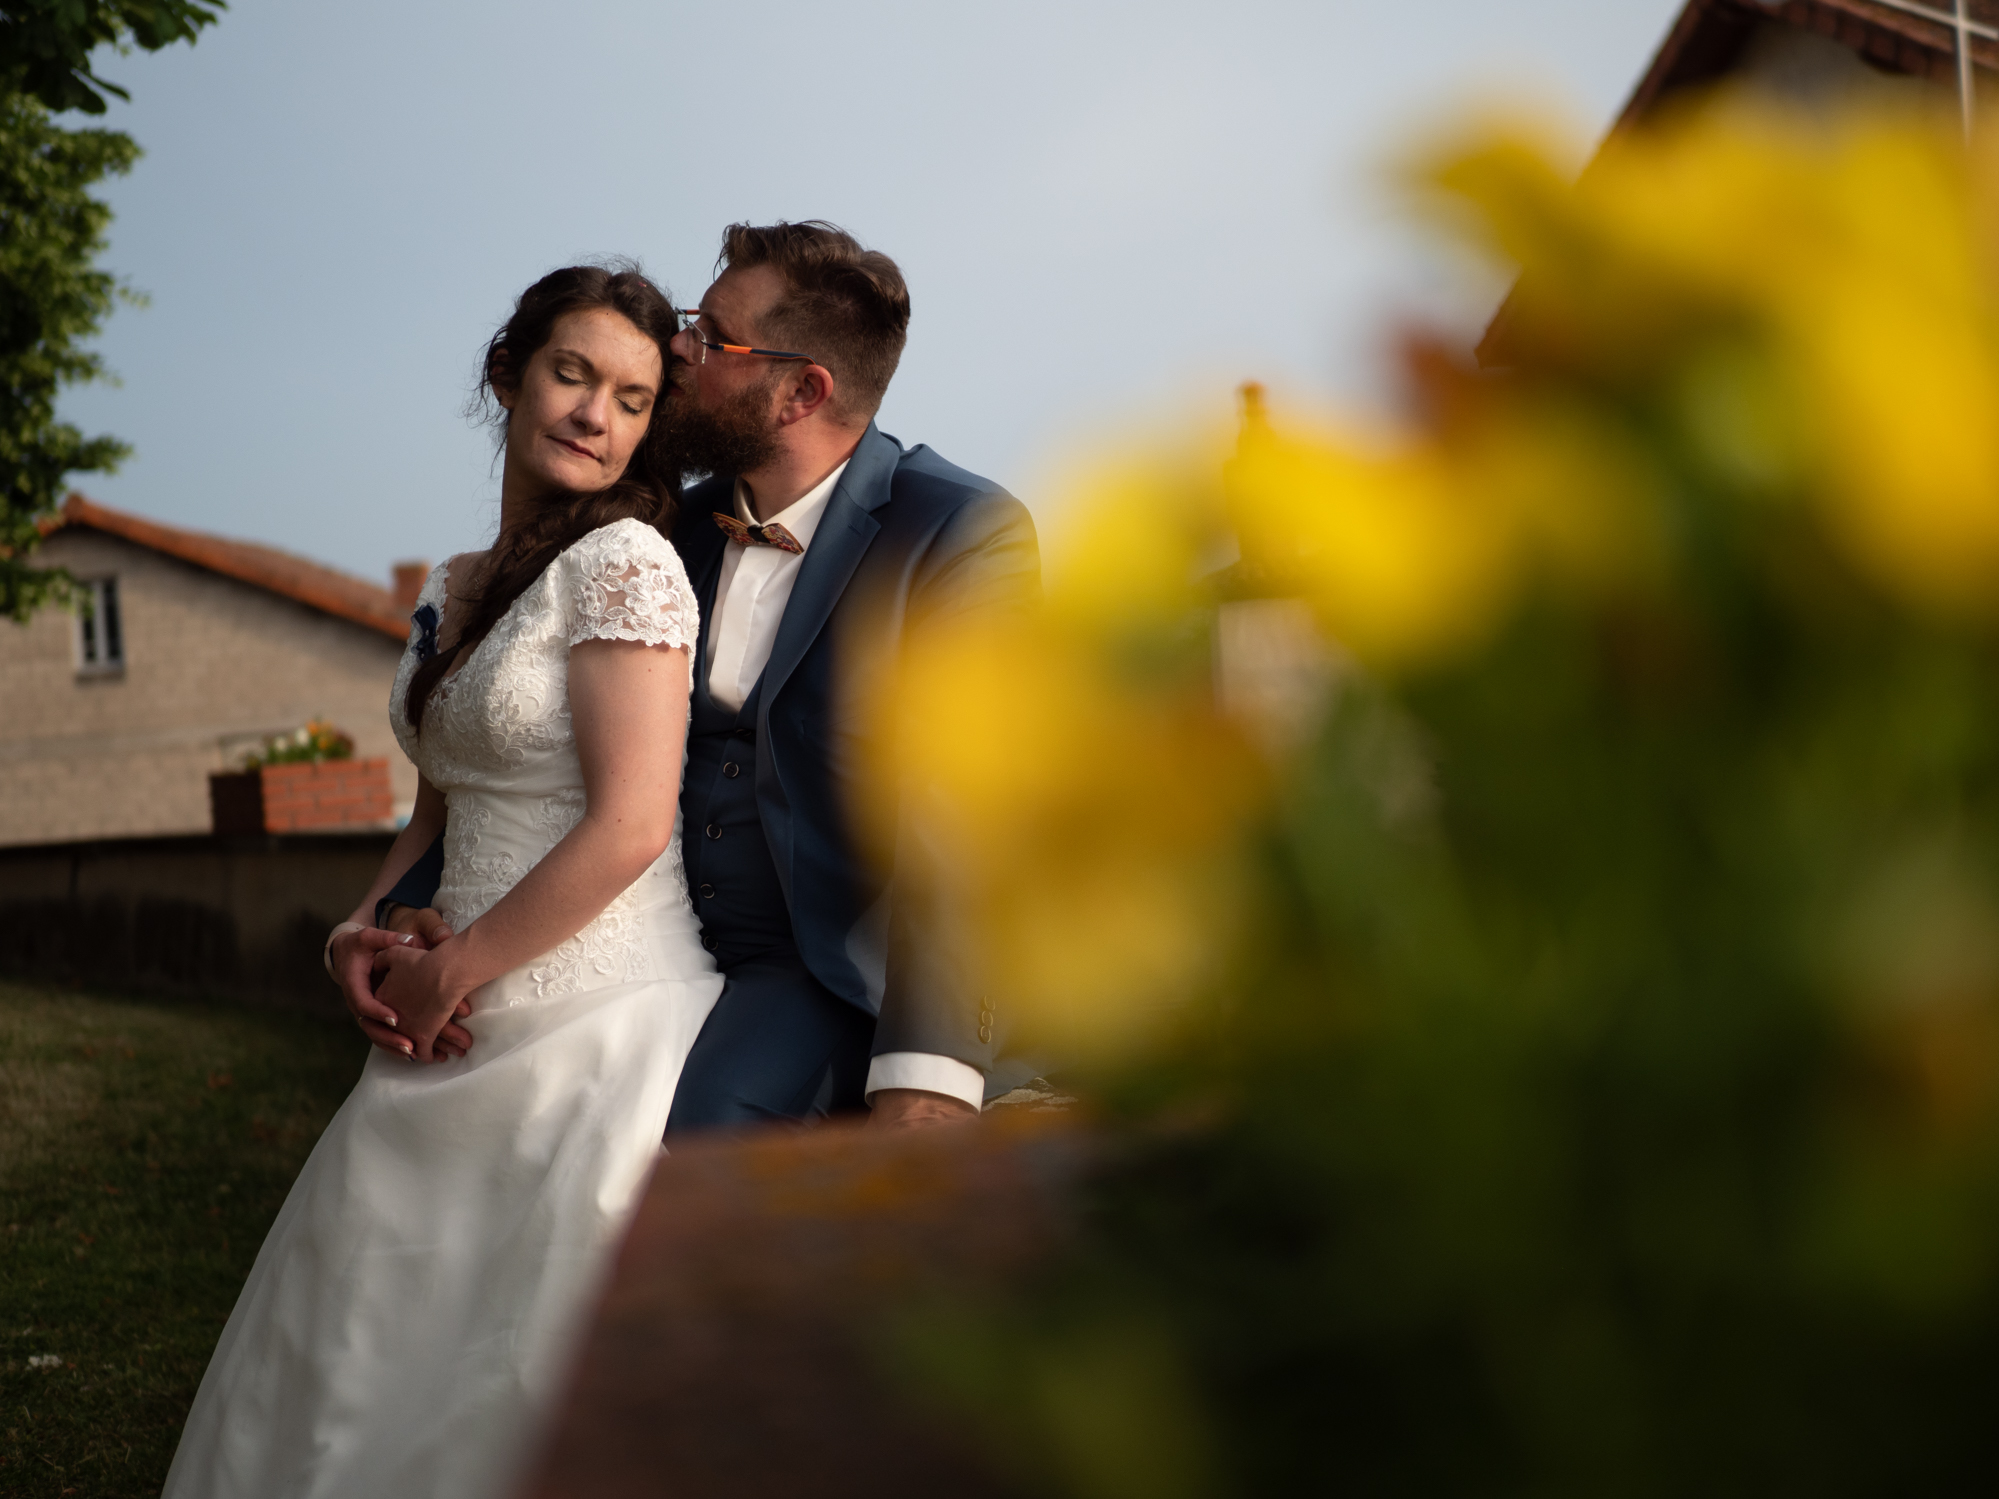 Photographe de mariage sur le Puy de Dome